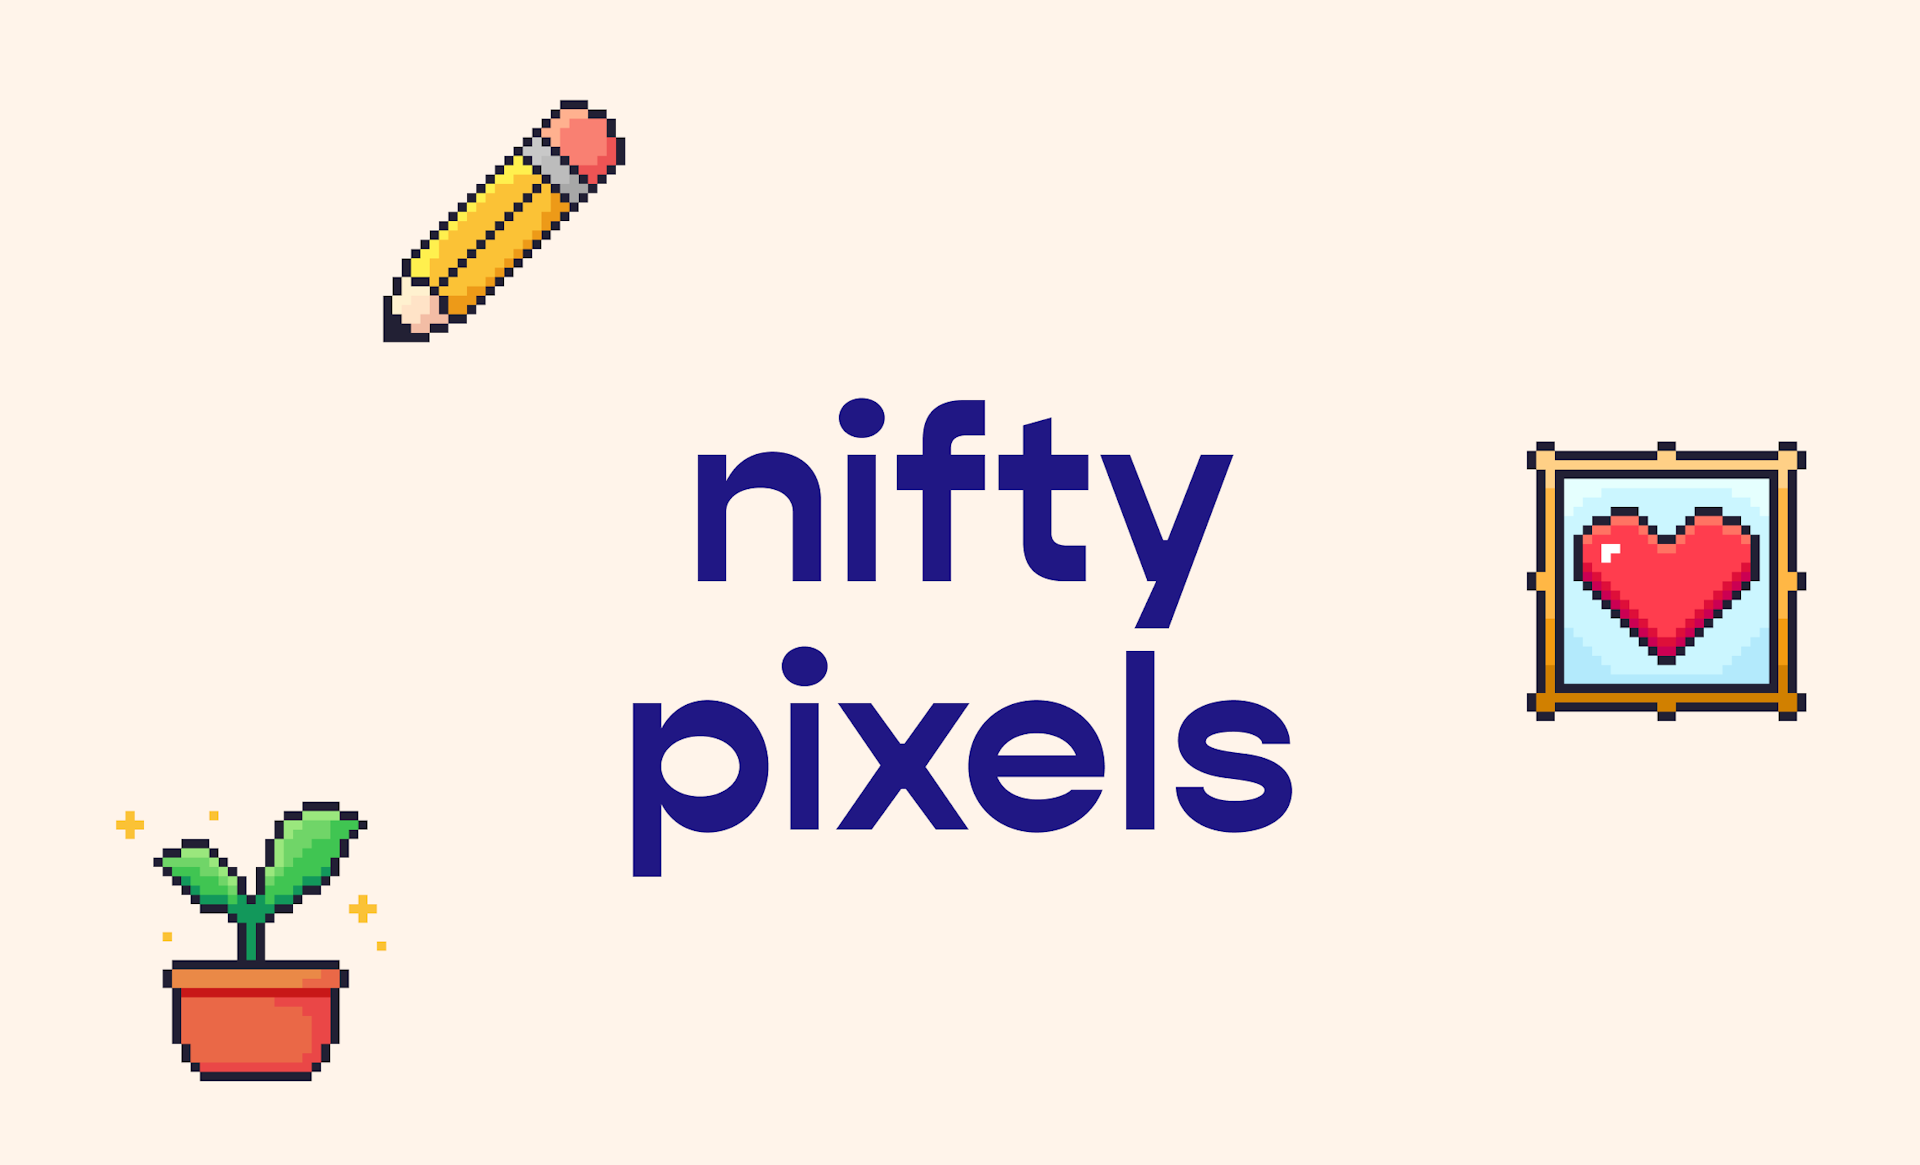 Nifty Pixels